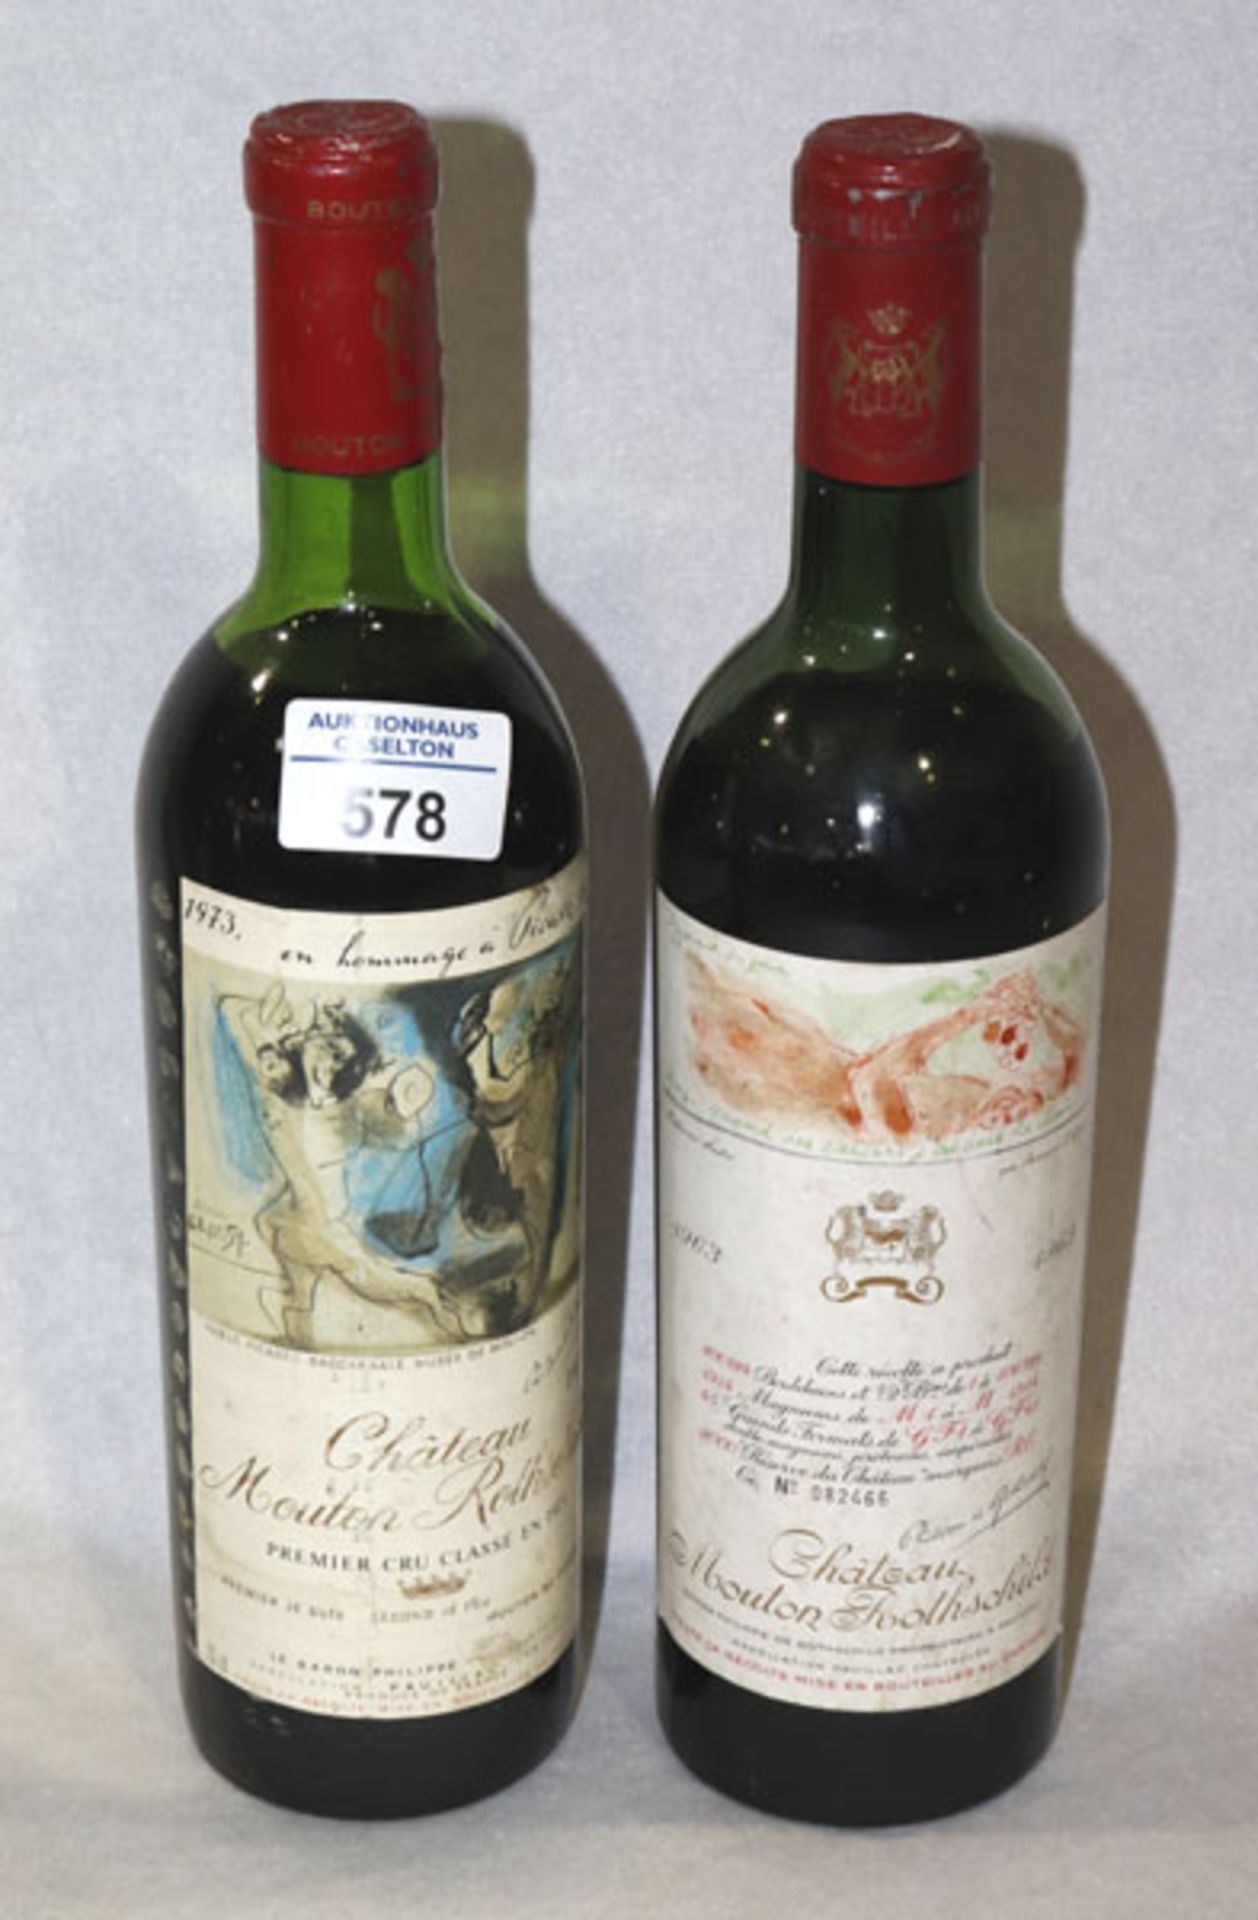 2 Flaschen Rotwein: Chateau Mouton Rothschild, Premier cru Classe en 1973, Picassolabel, und Chateau